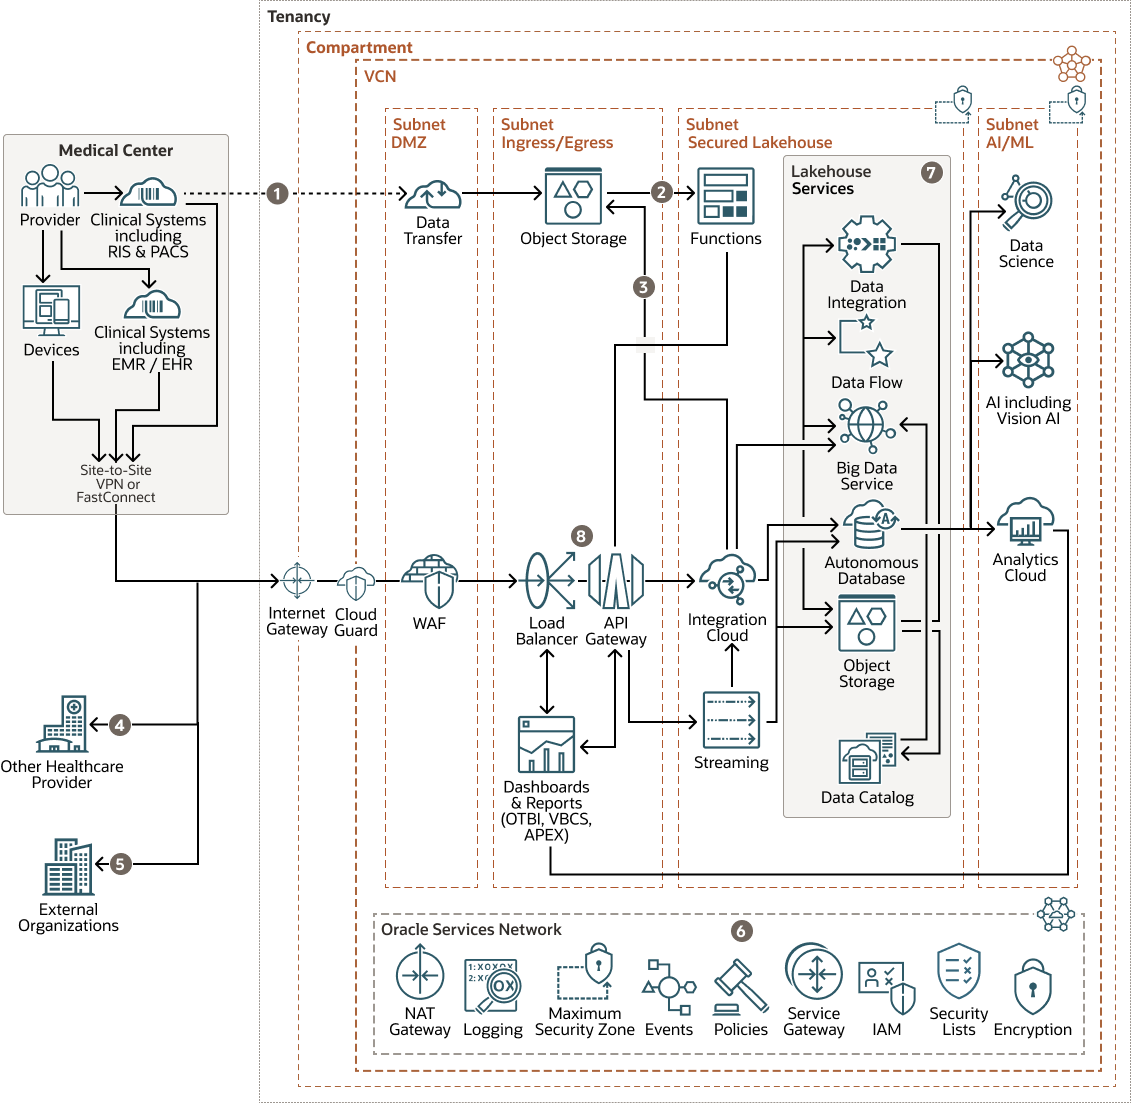 Description of healthcare-lakehouse-topology-diagram.png follows